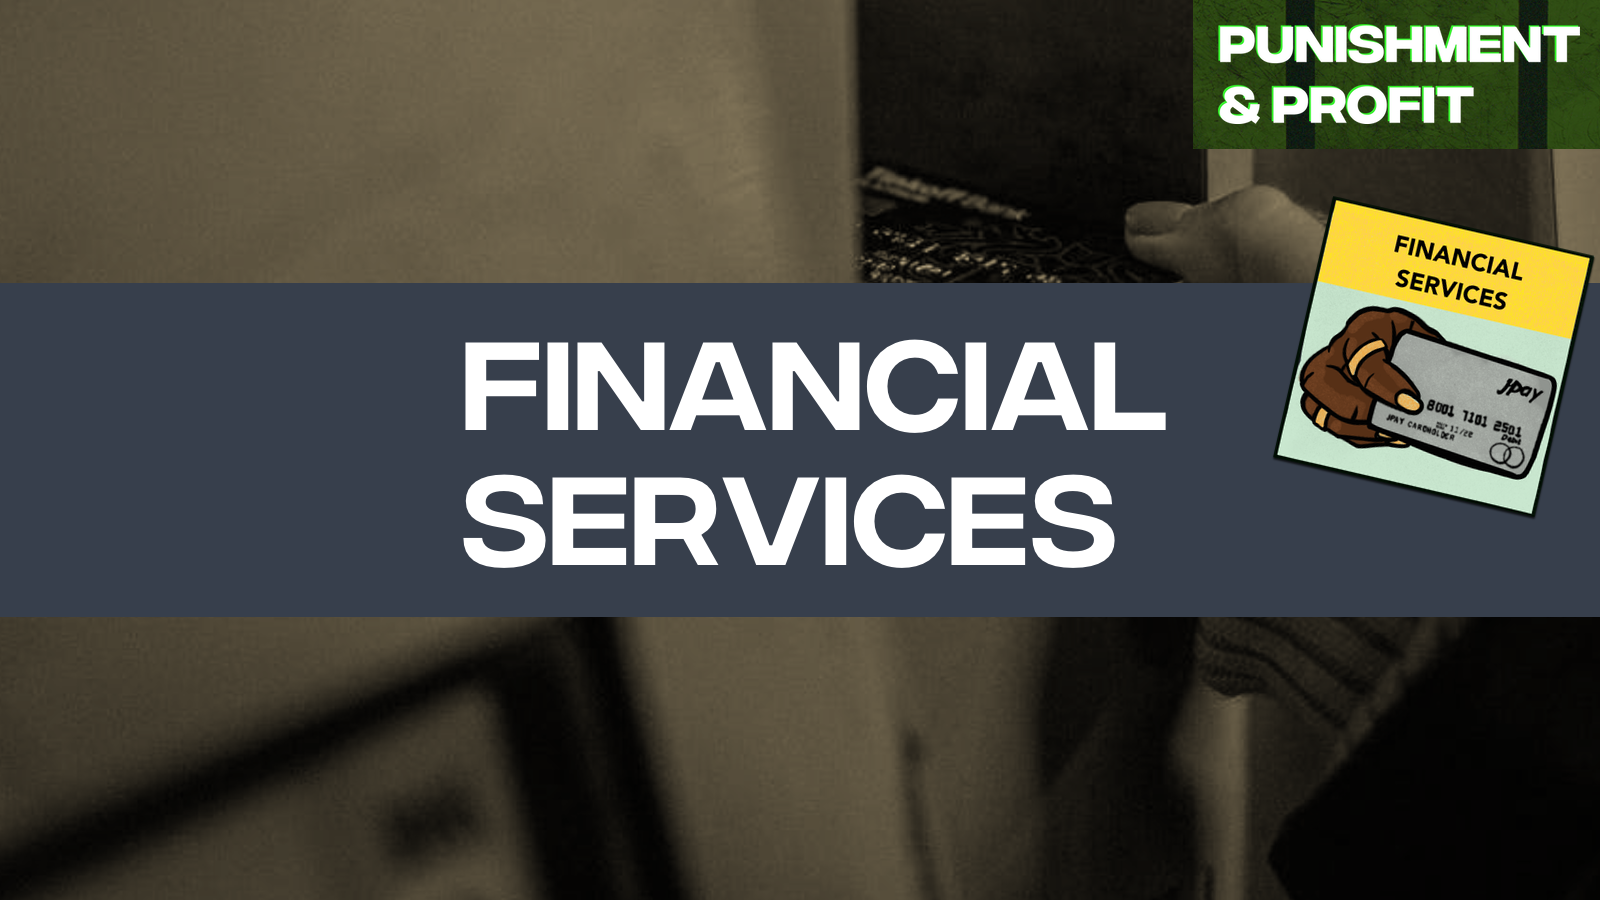 Punishment & Profit: Financial Services